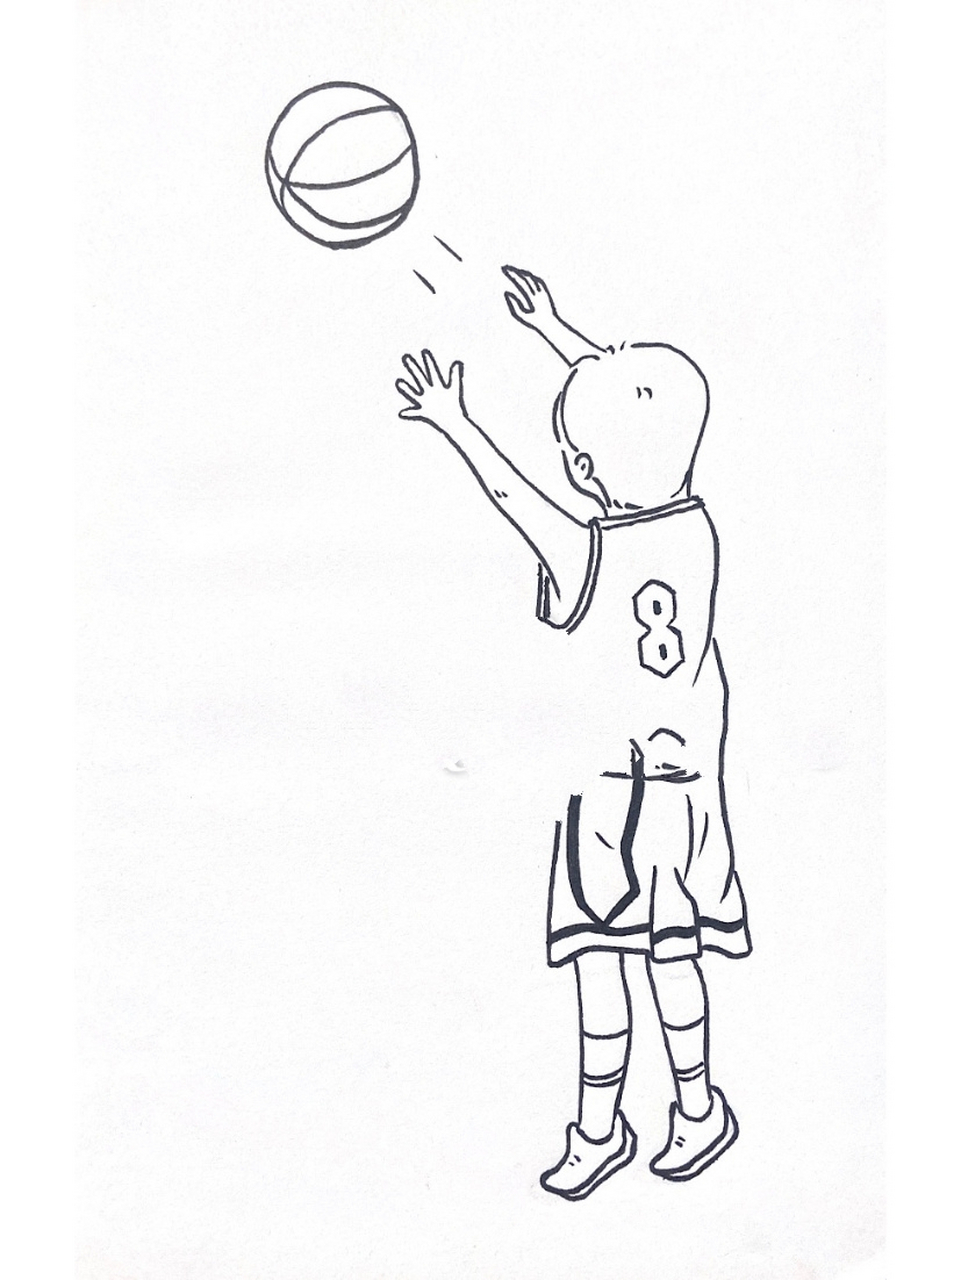 投篮球简笔画男孩图片